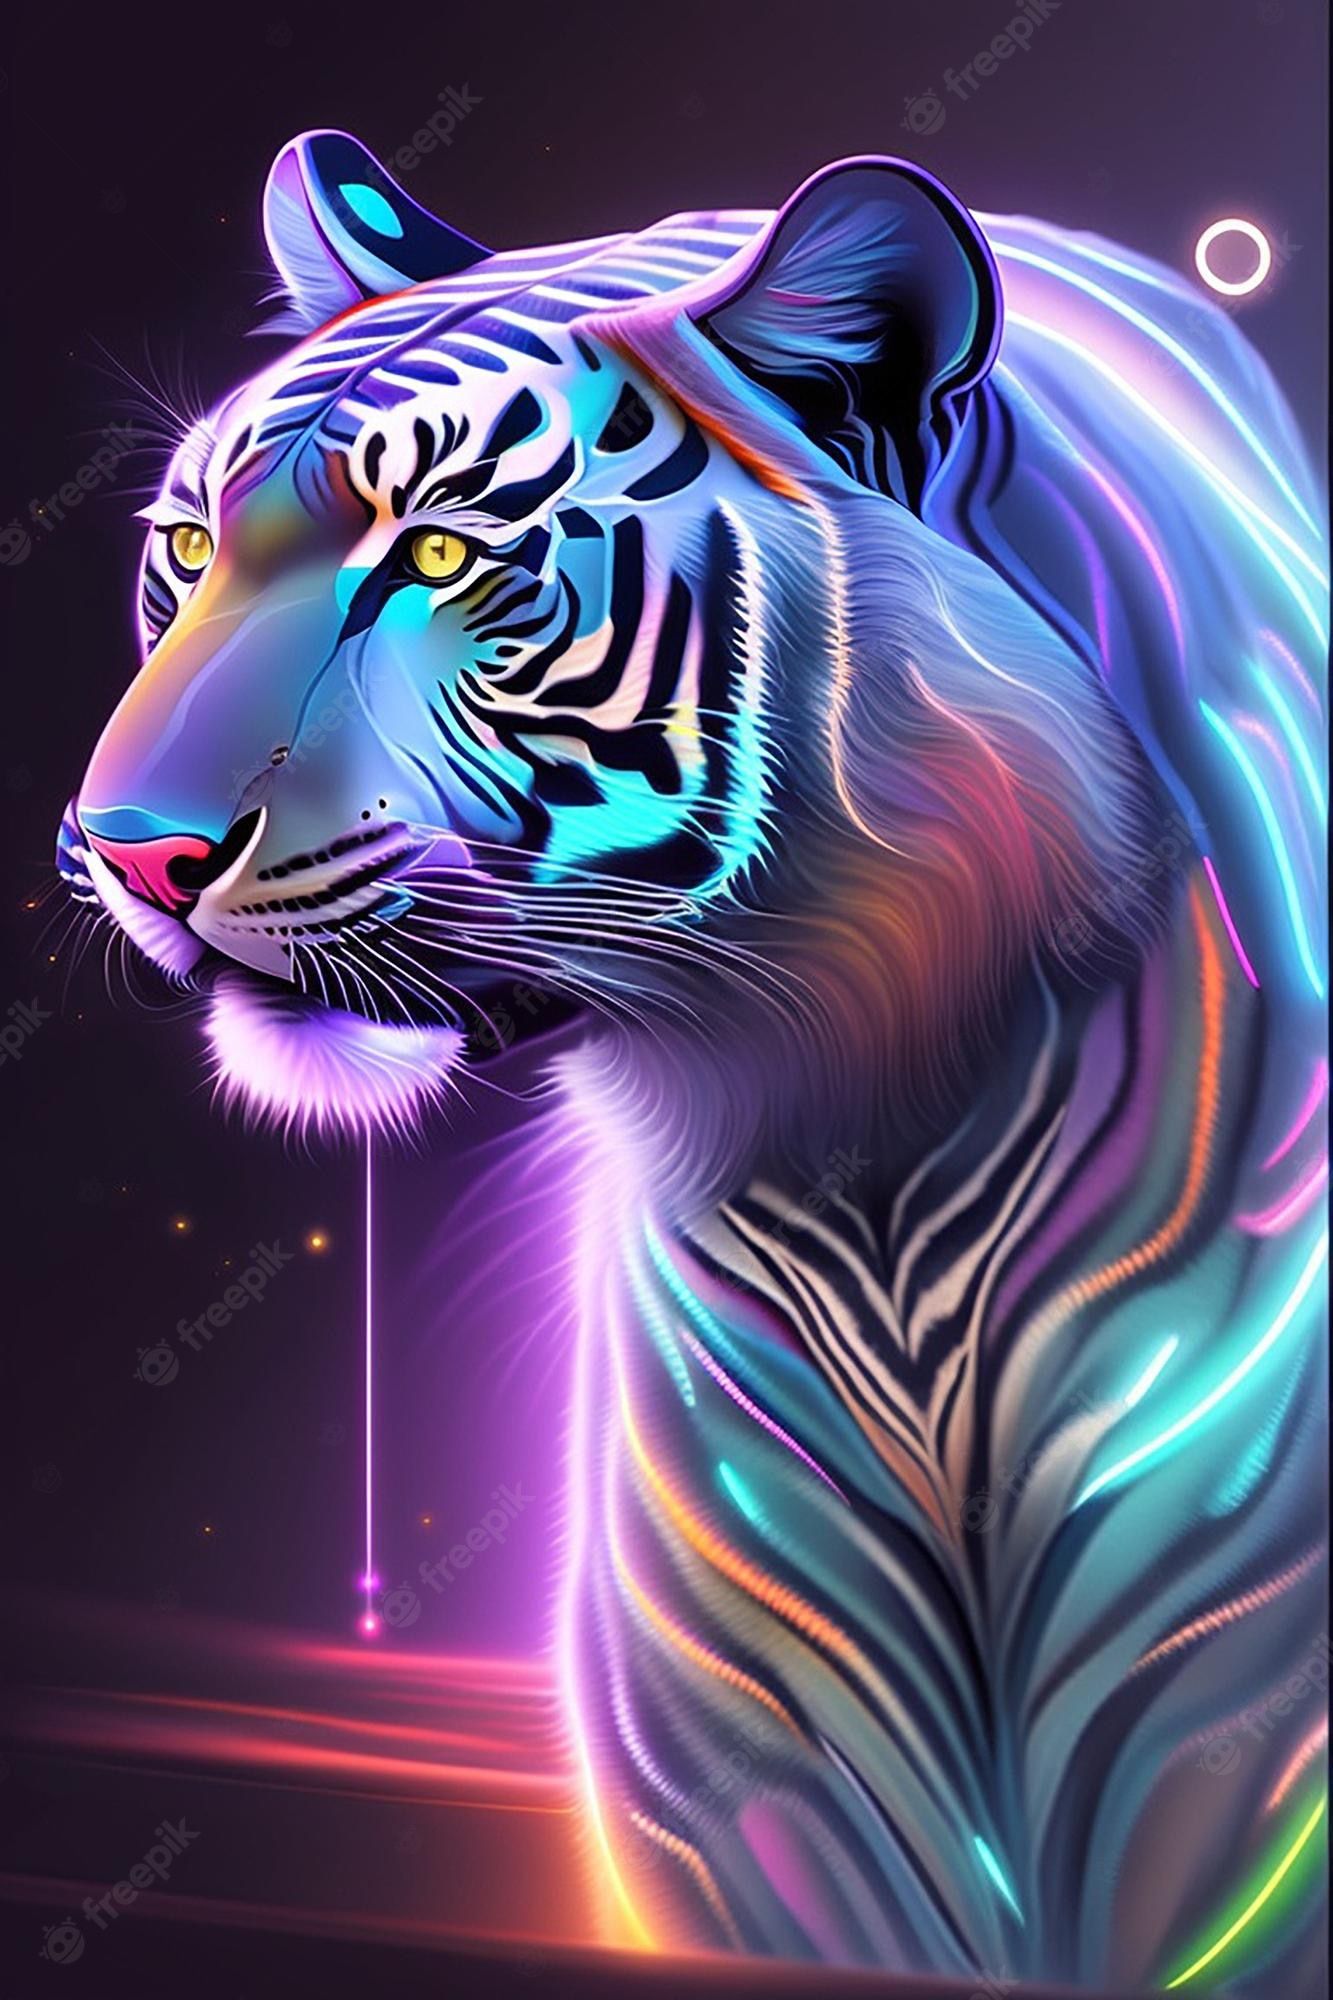  Bunte Farben Hintergrundbild 1333x2000. Tigerästhetik, ki, katze, gepard, bunte farben, effekt, augen, fantastisch, versteckter dschungel, löwe